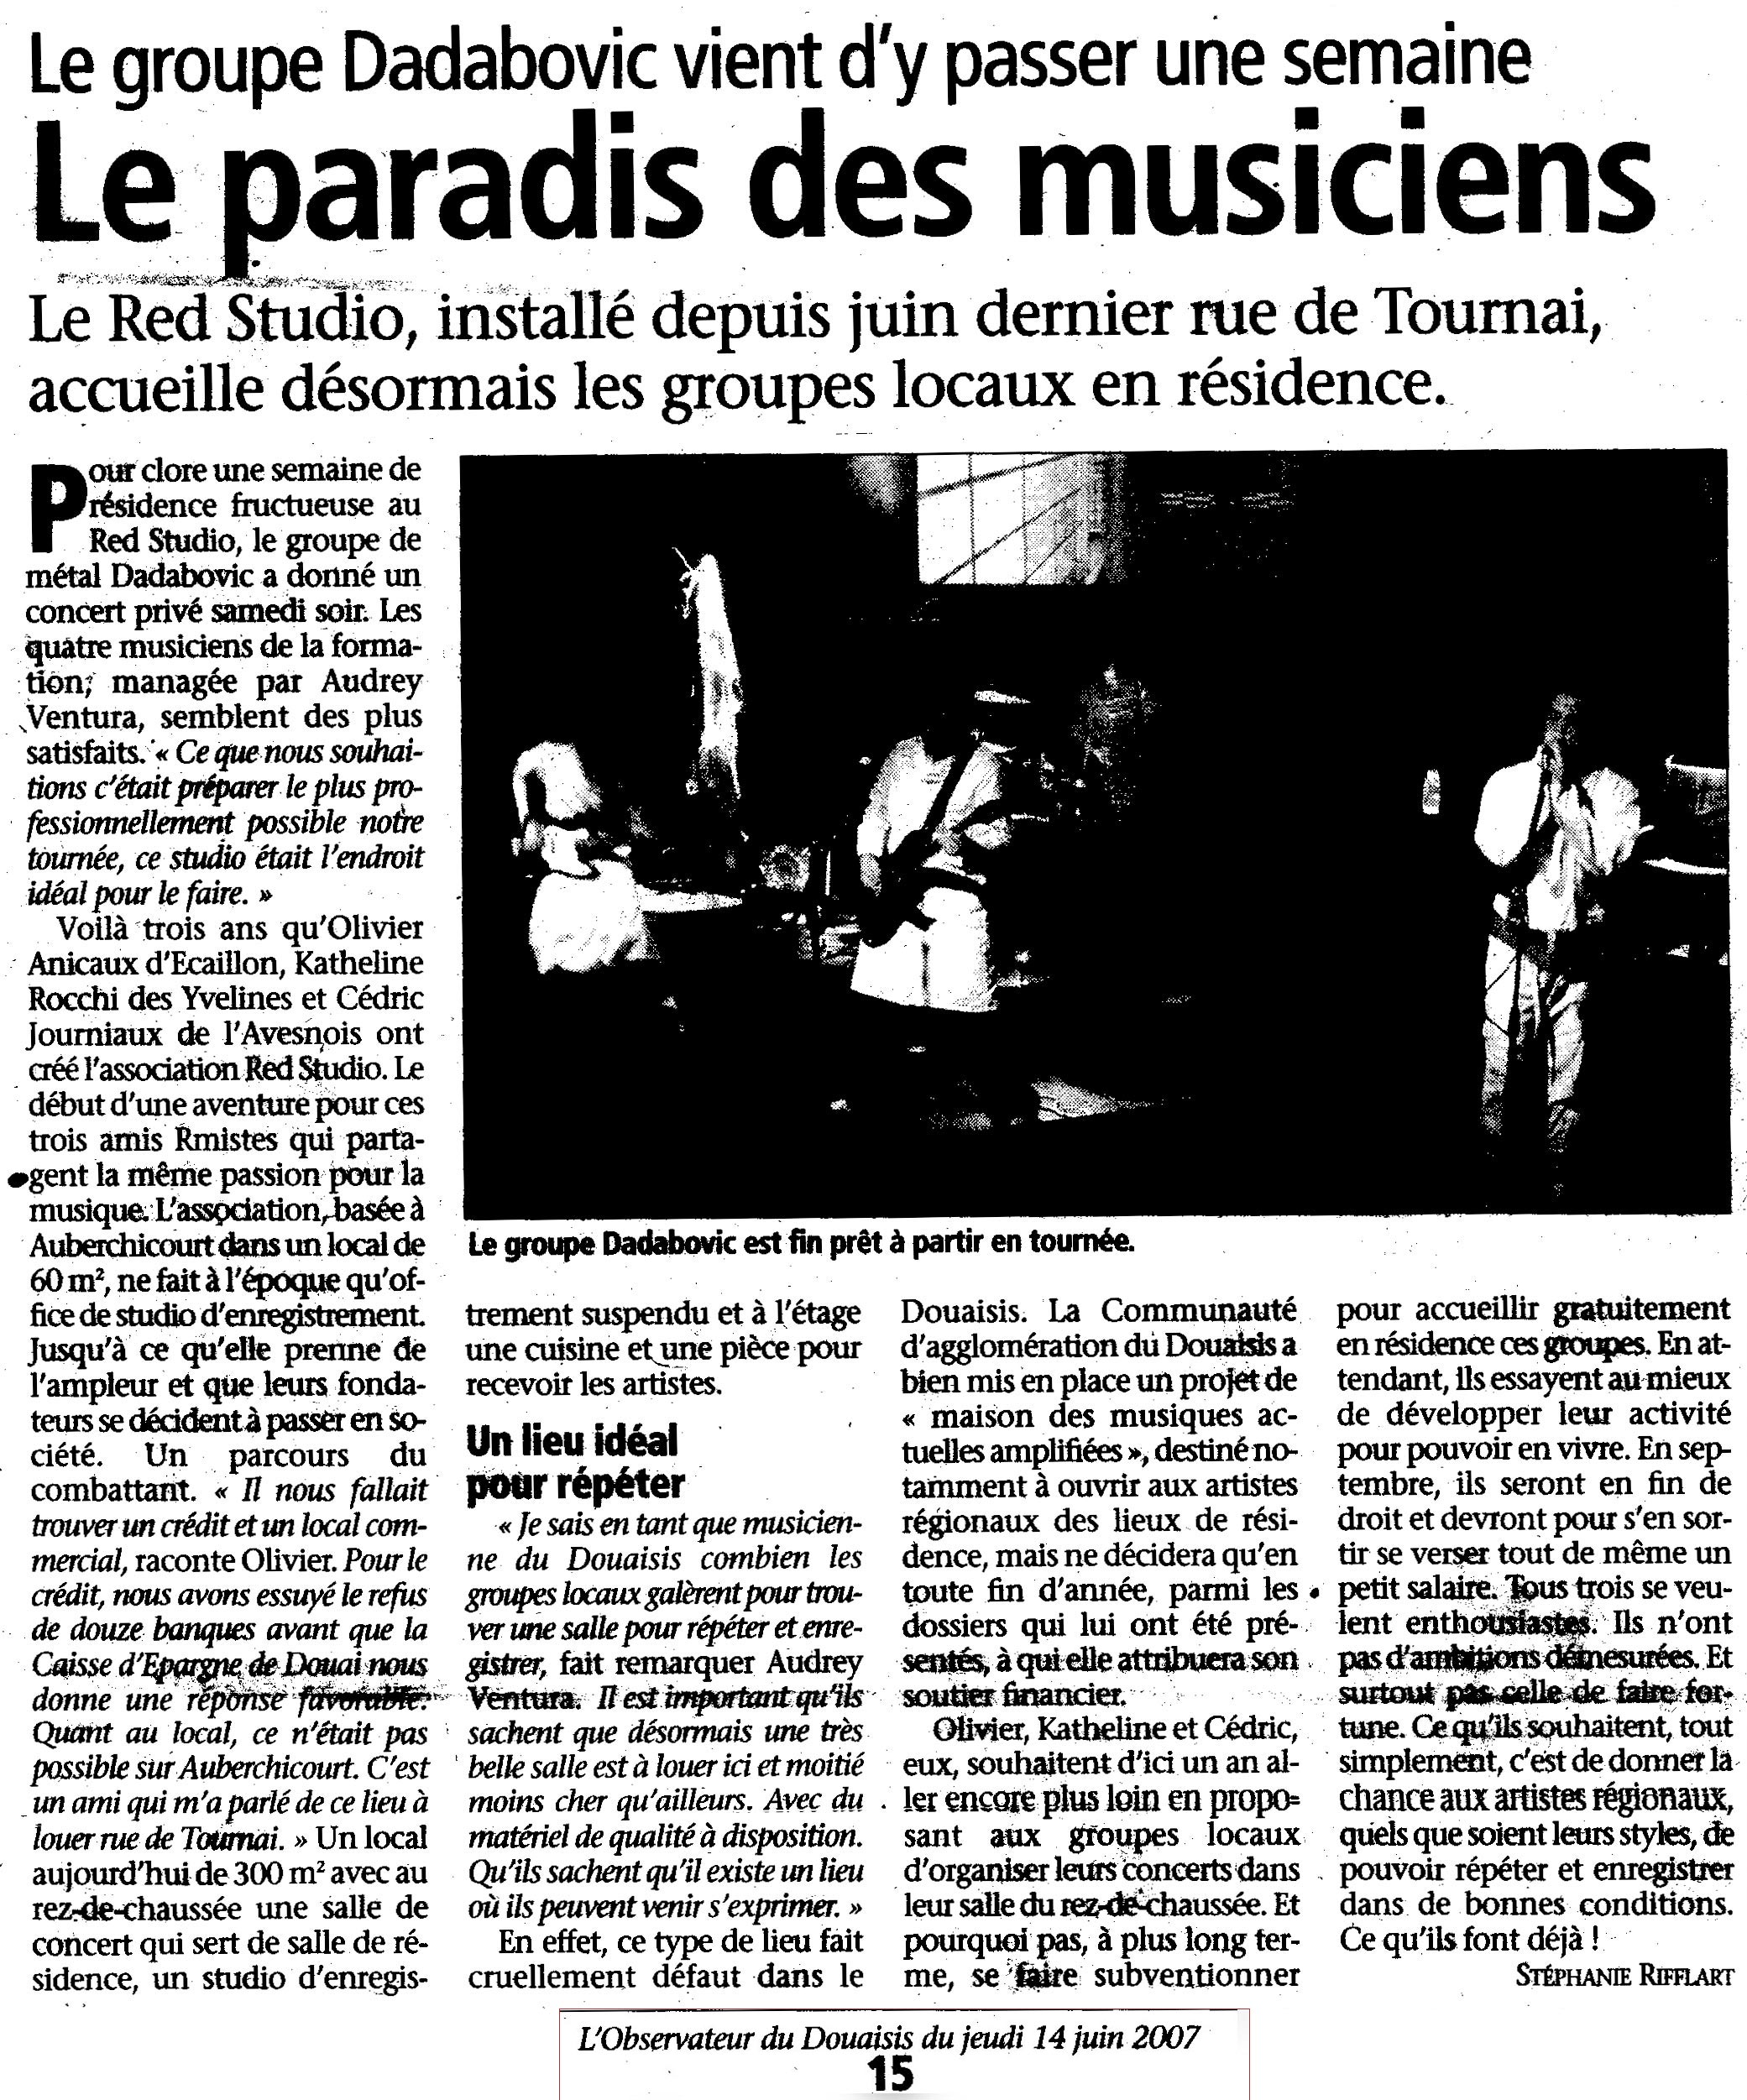 L'Observateur du Douaisis (juin 2007)